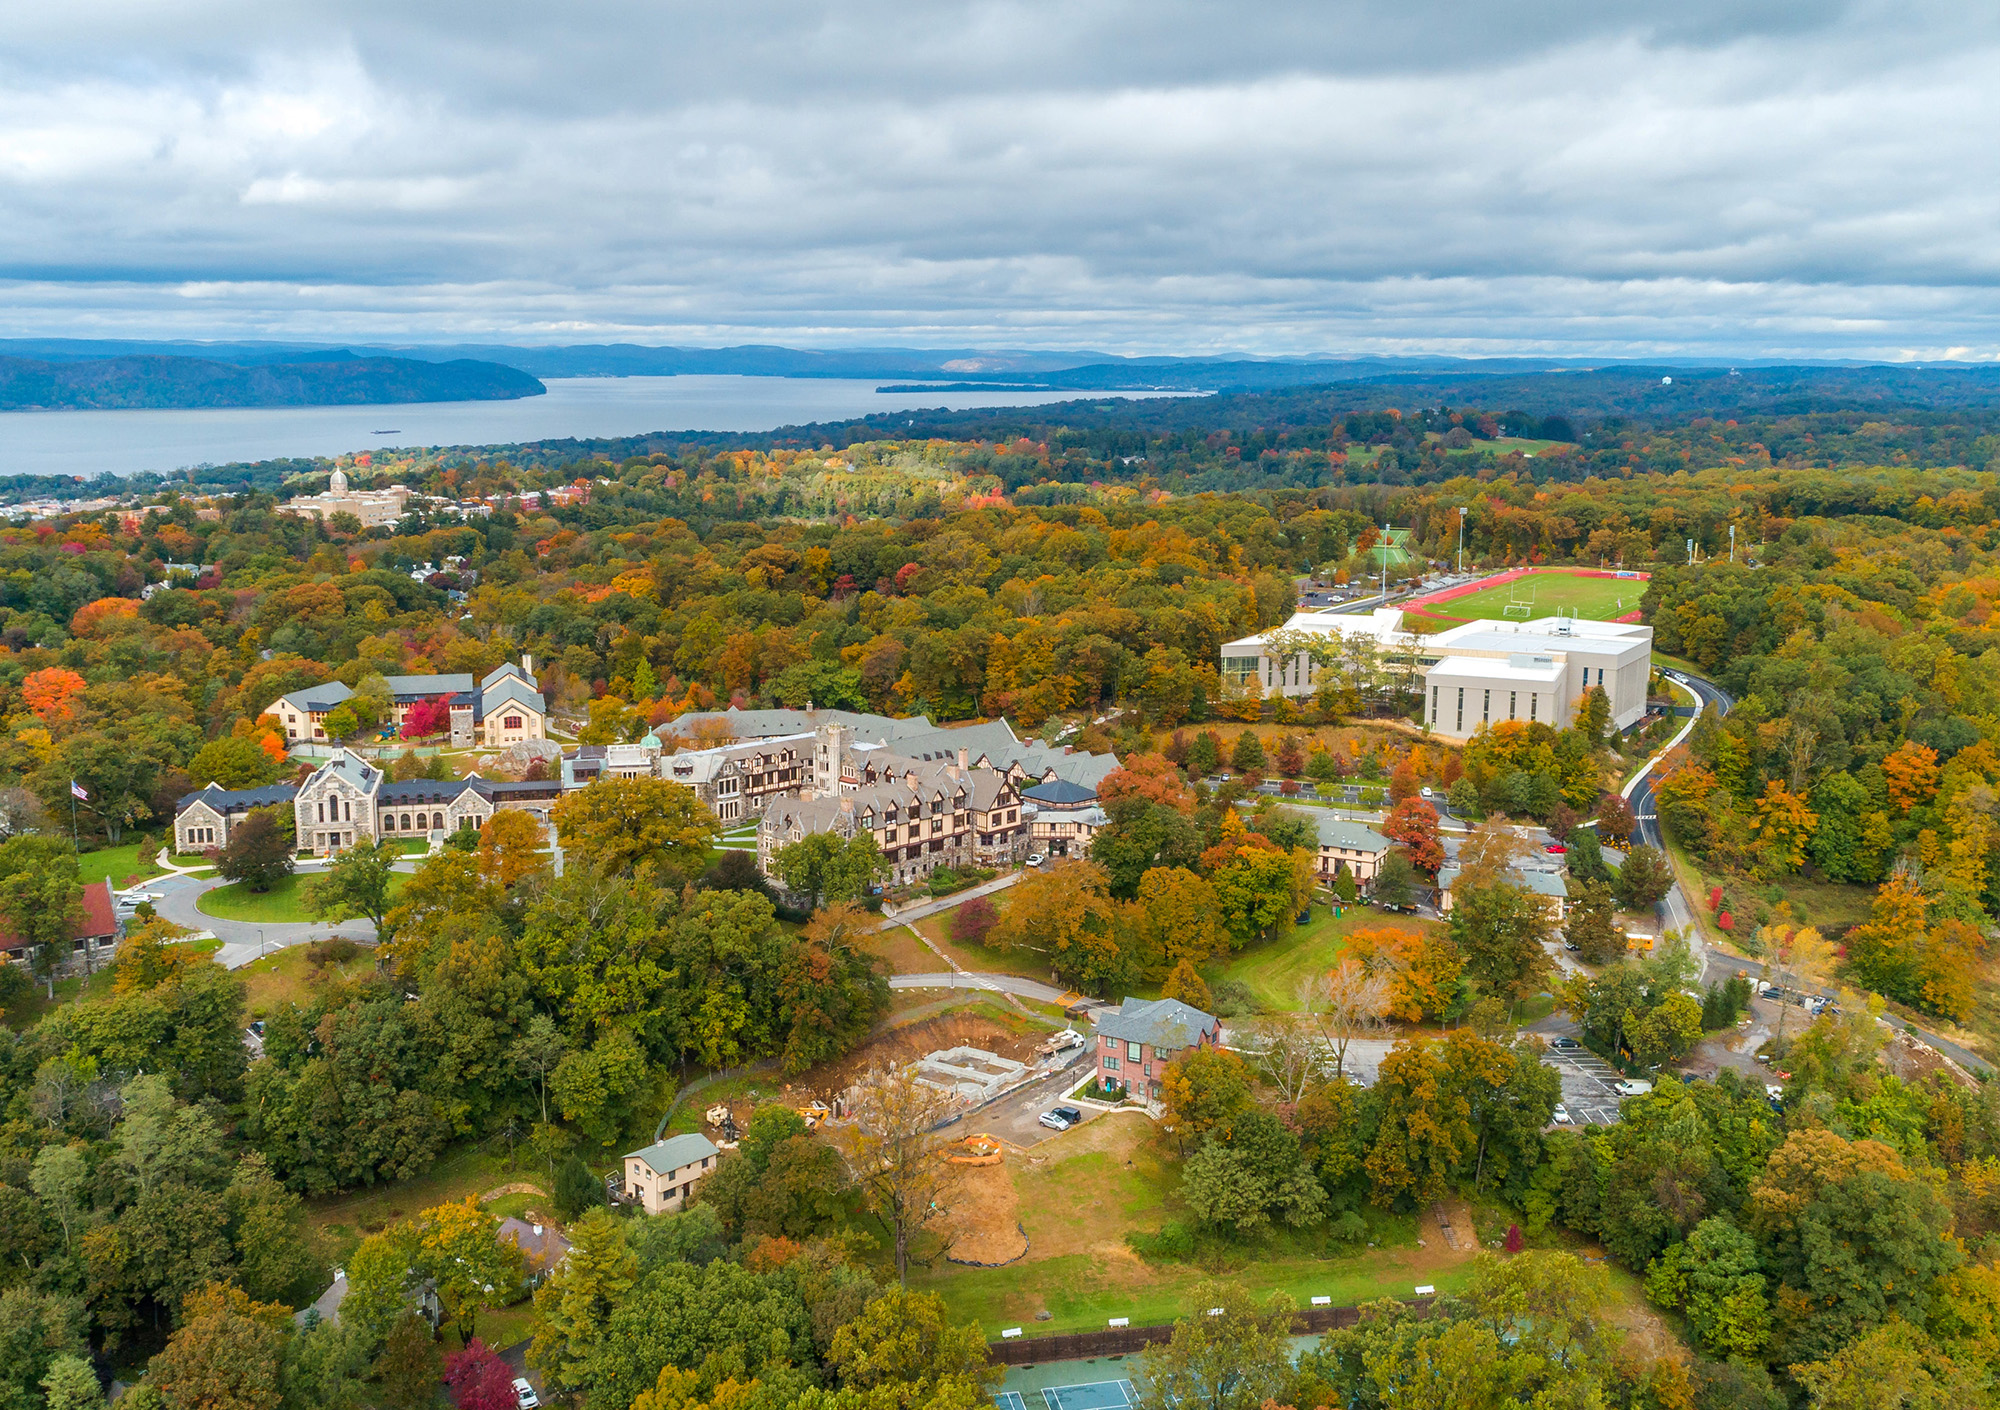 Aerial of Campus